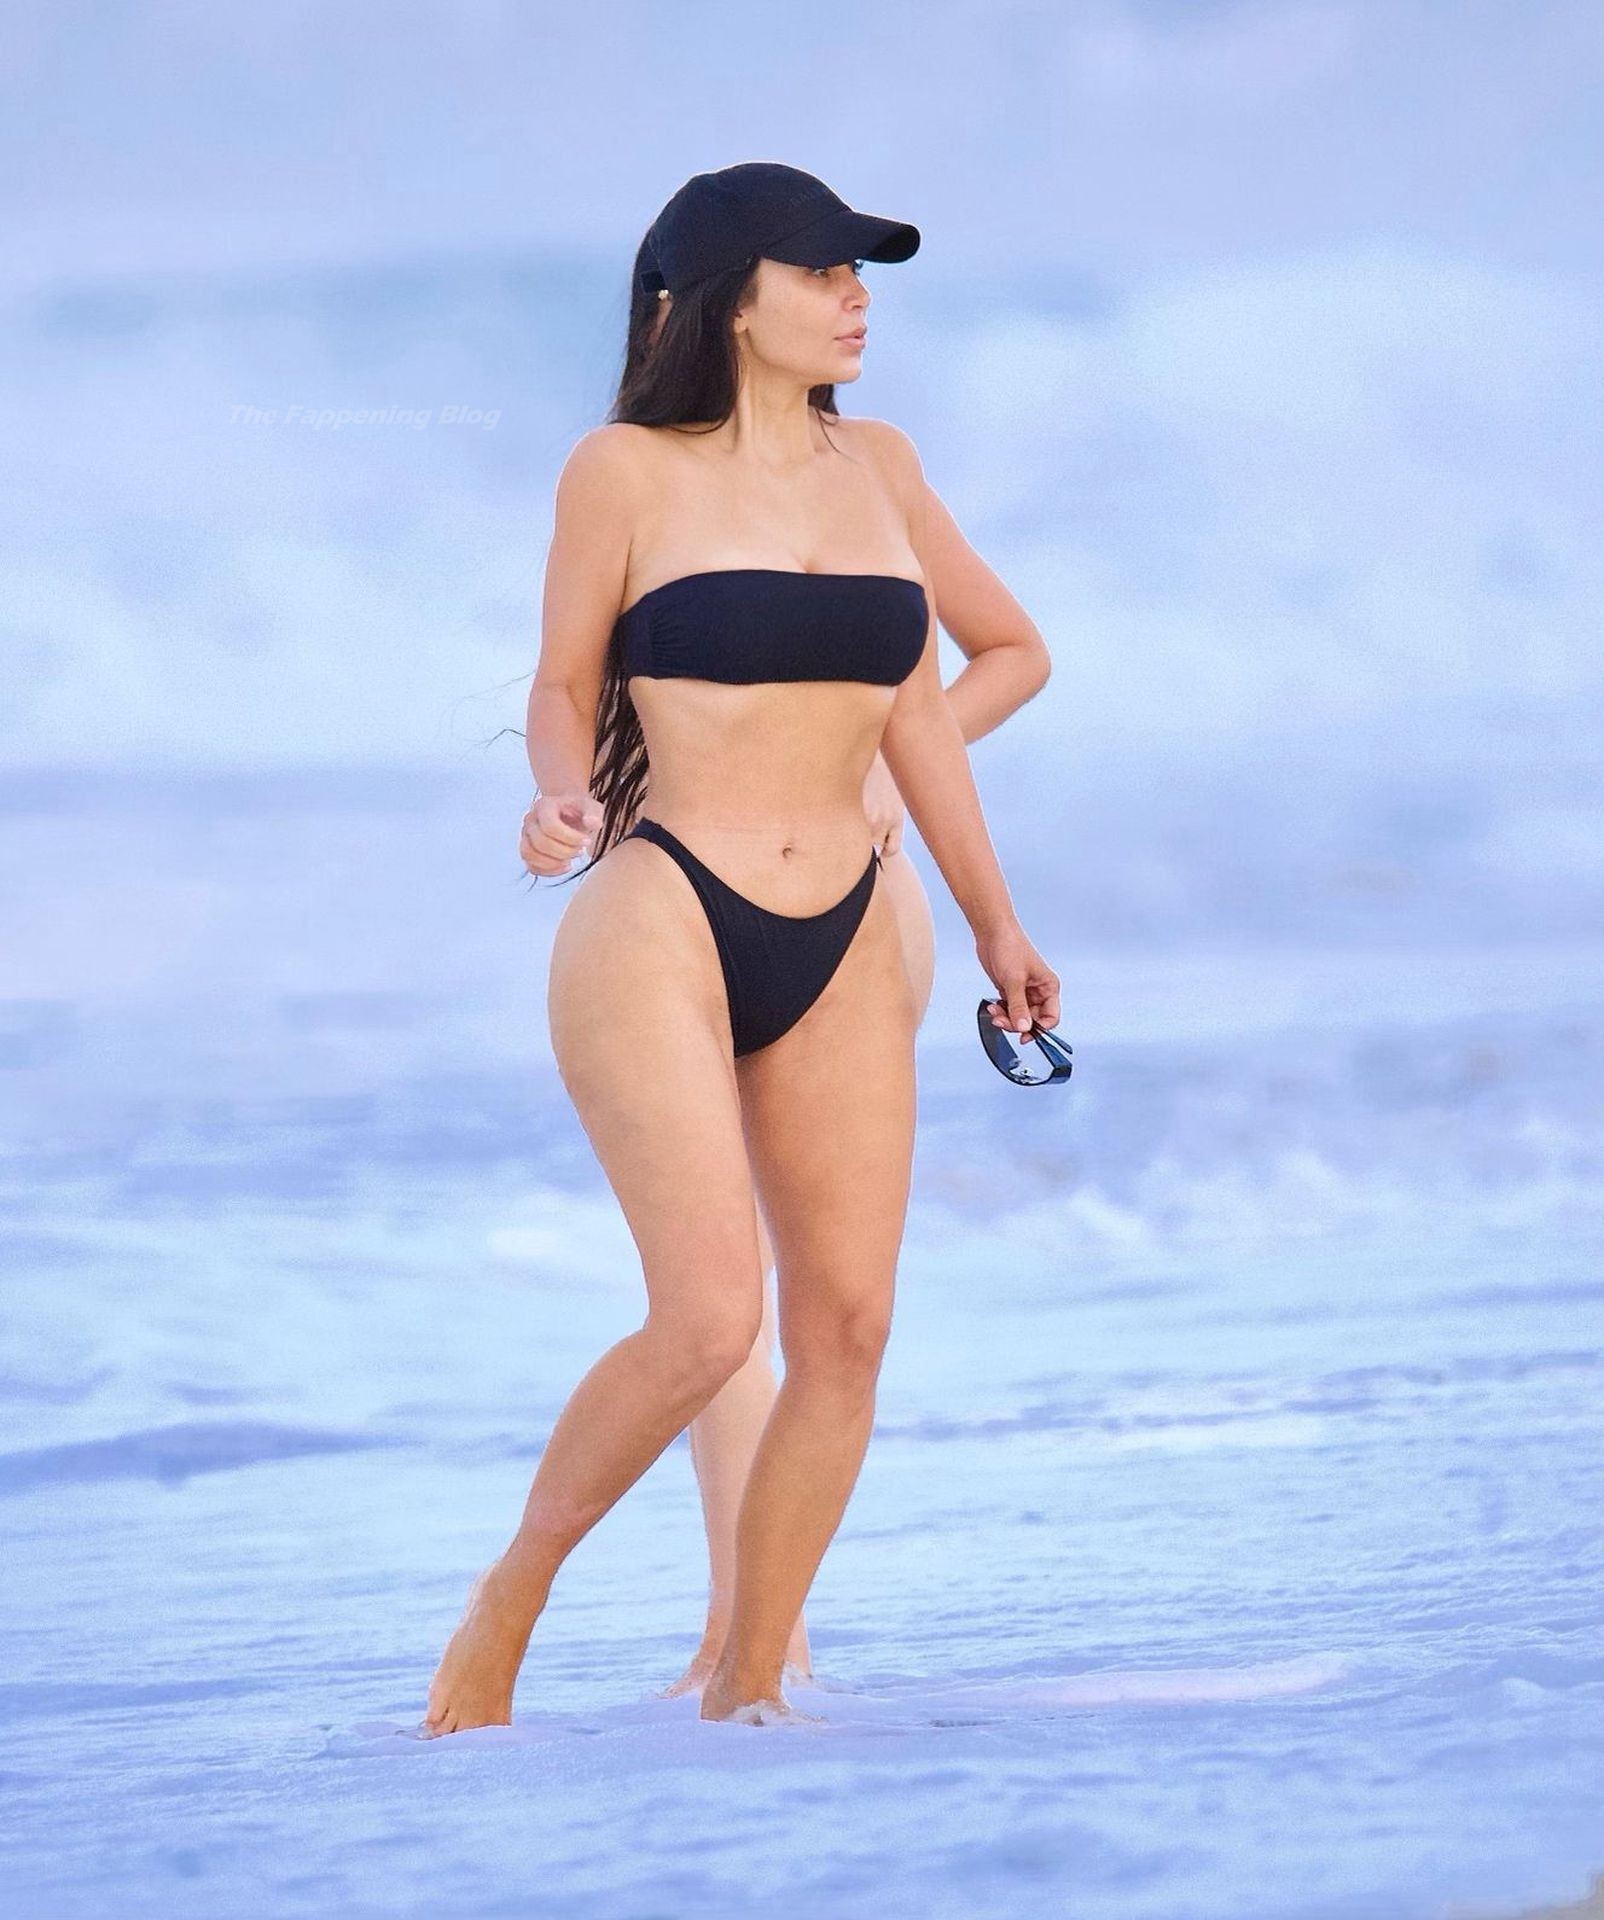 Kim Kardashian Flaunts Her Curves on The Beach (17 Photos)